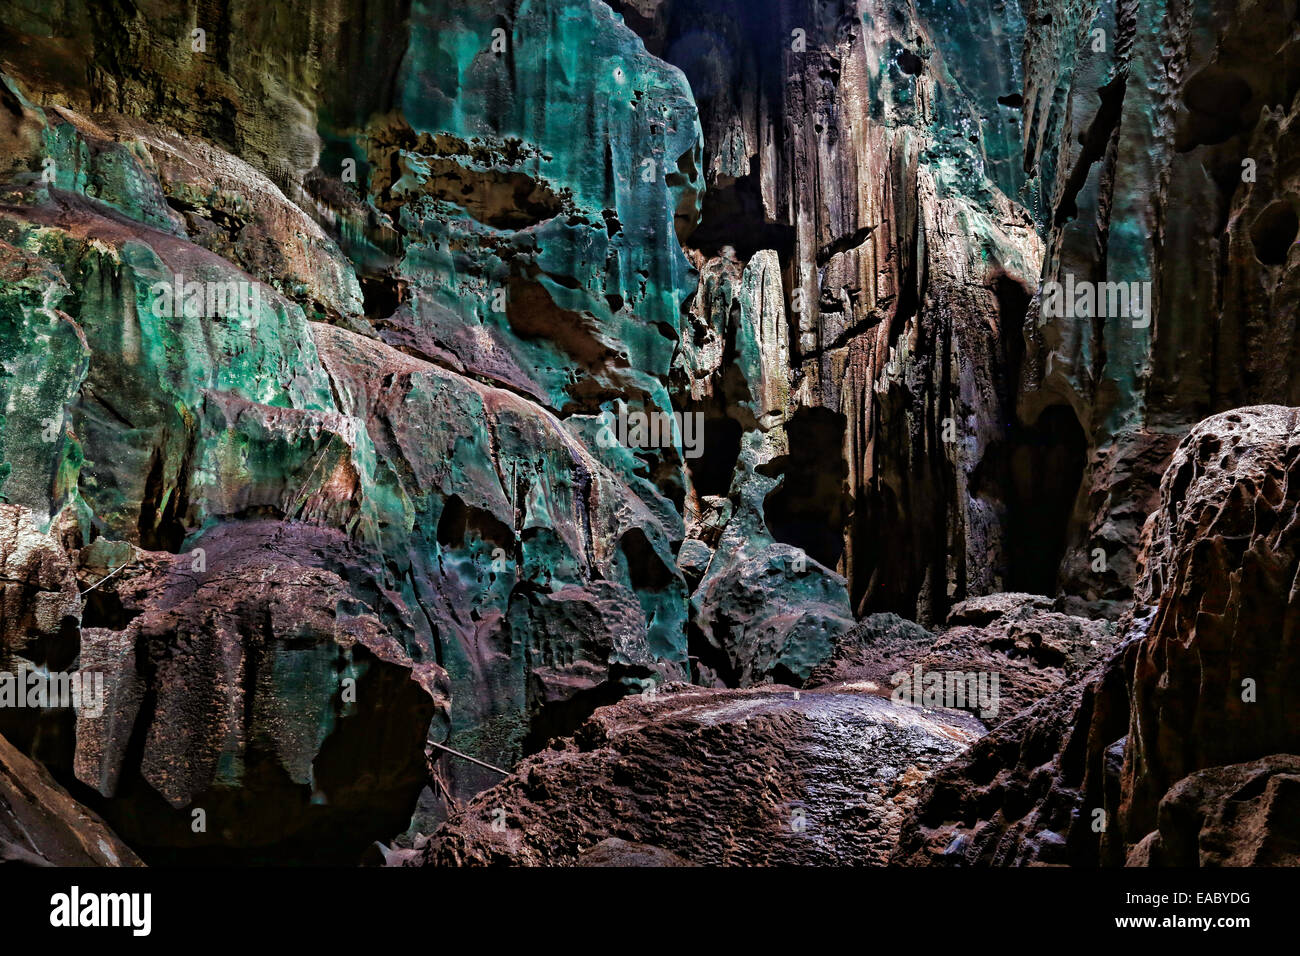 Great Cave at Niah National Park, Sarawak, Malaysia Stock Photo